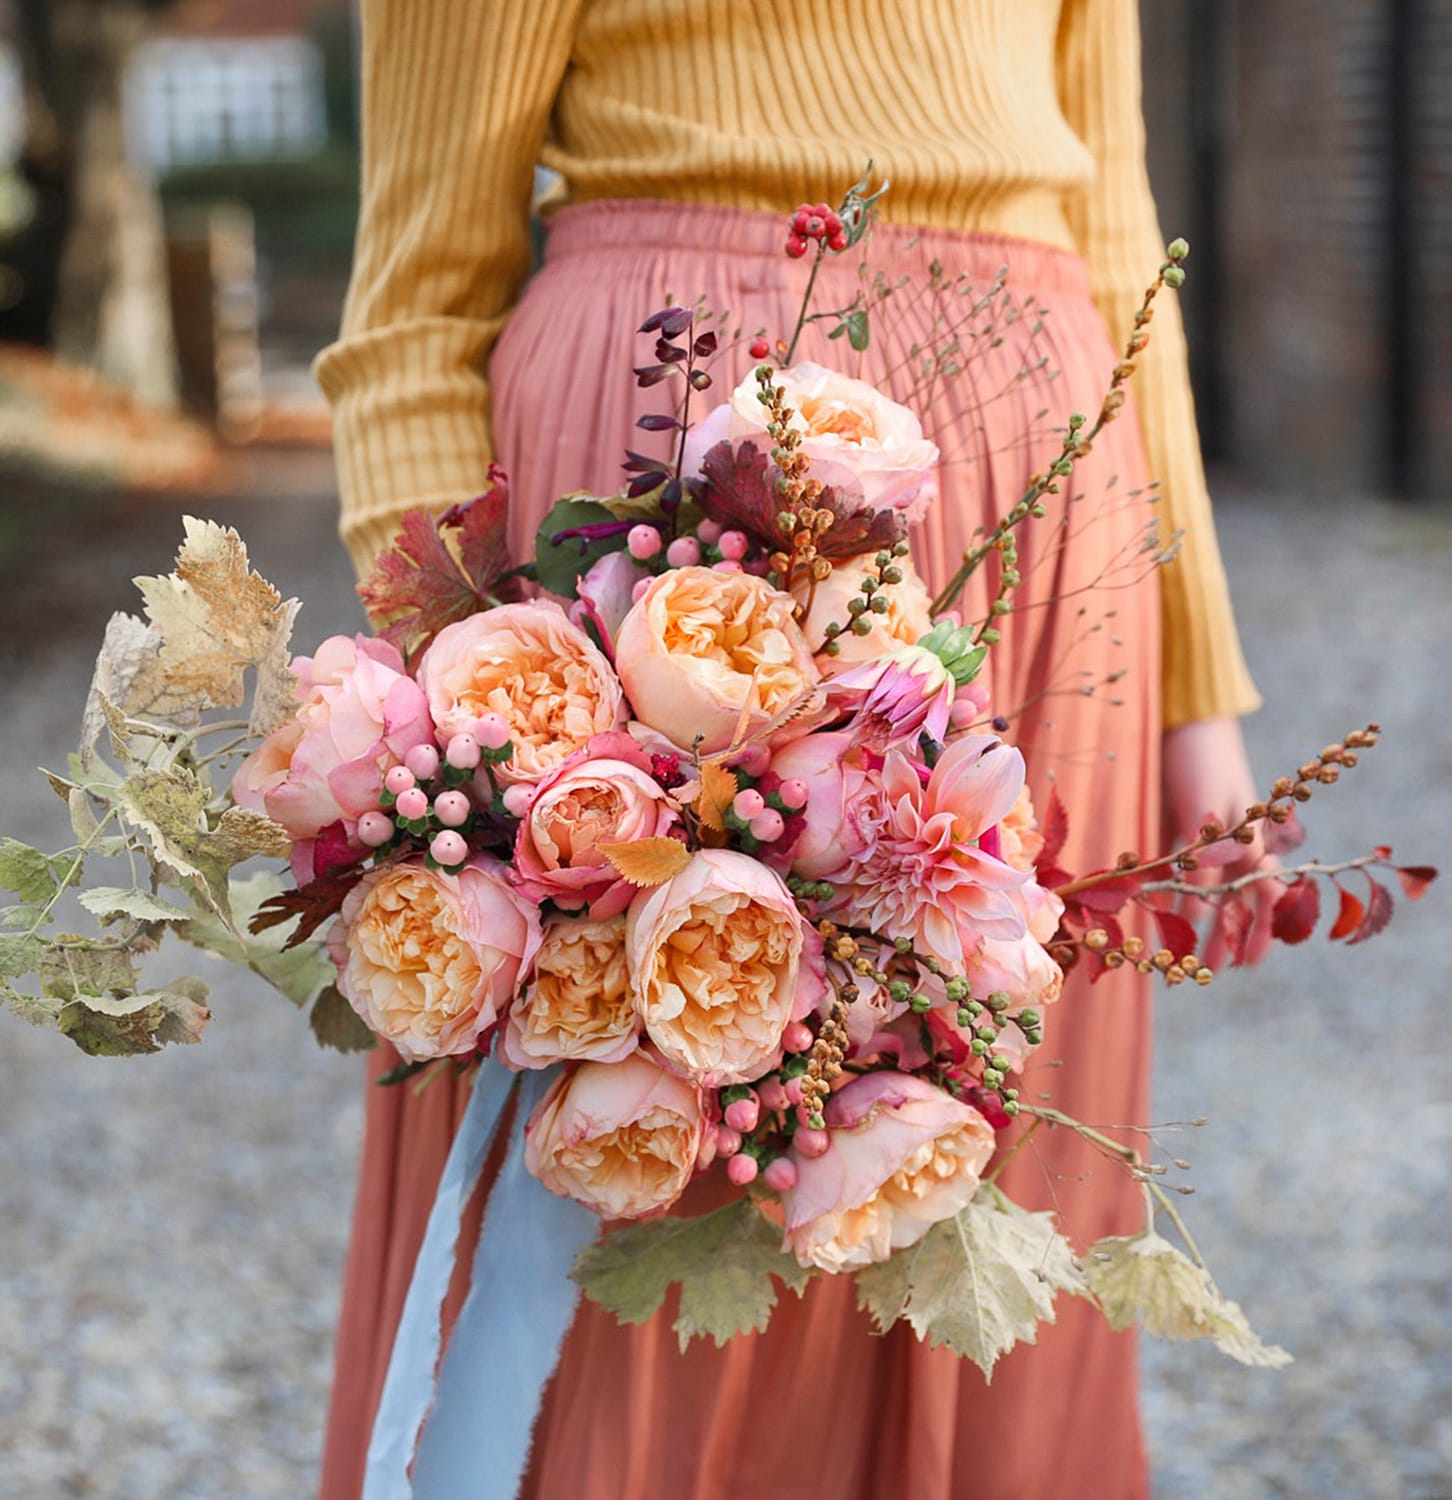 Edith roses autumn wedding design